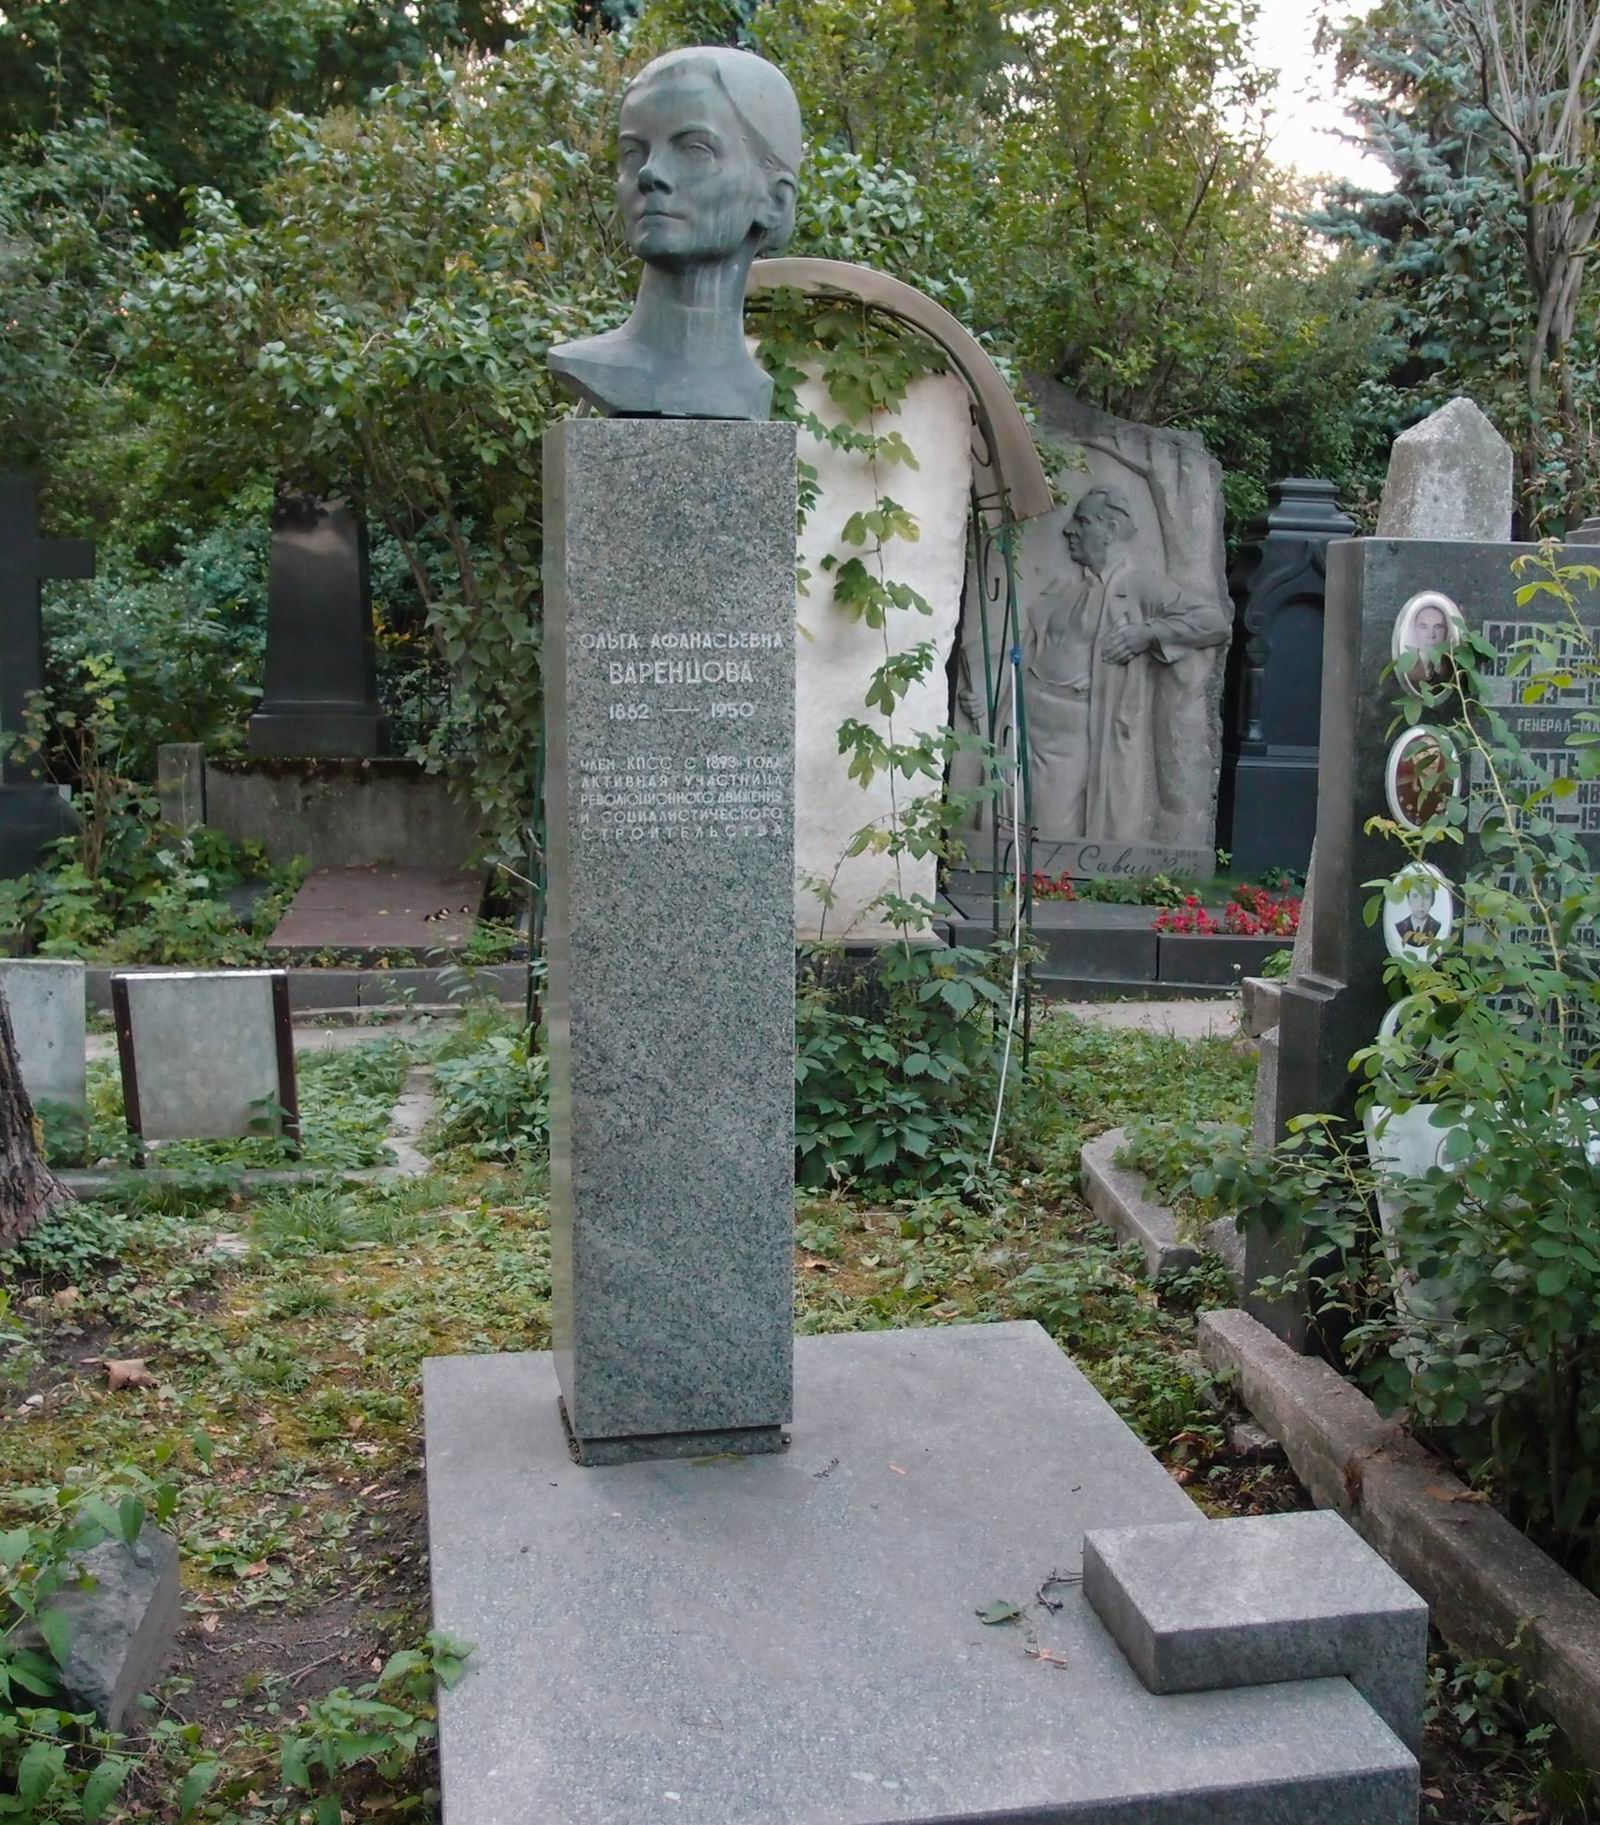 Памятник на могиле Варенцовой О.А. (1862-1950), на Новодевичьем кладбище (2-41-9). Нажмите левую кнопку мыши чтобы увидеть фрагмент памятника.